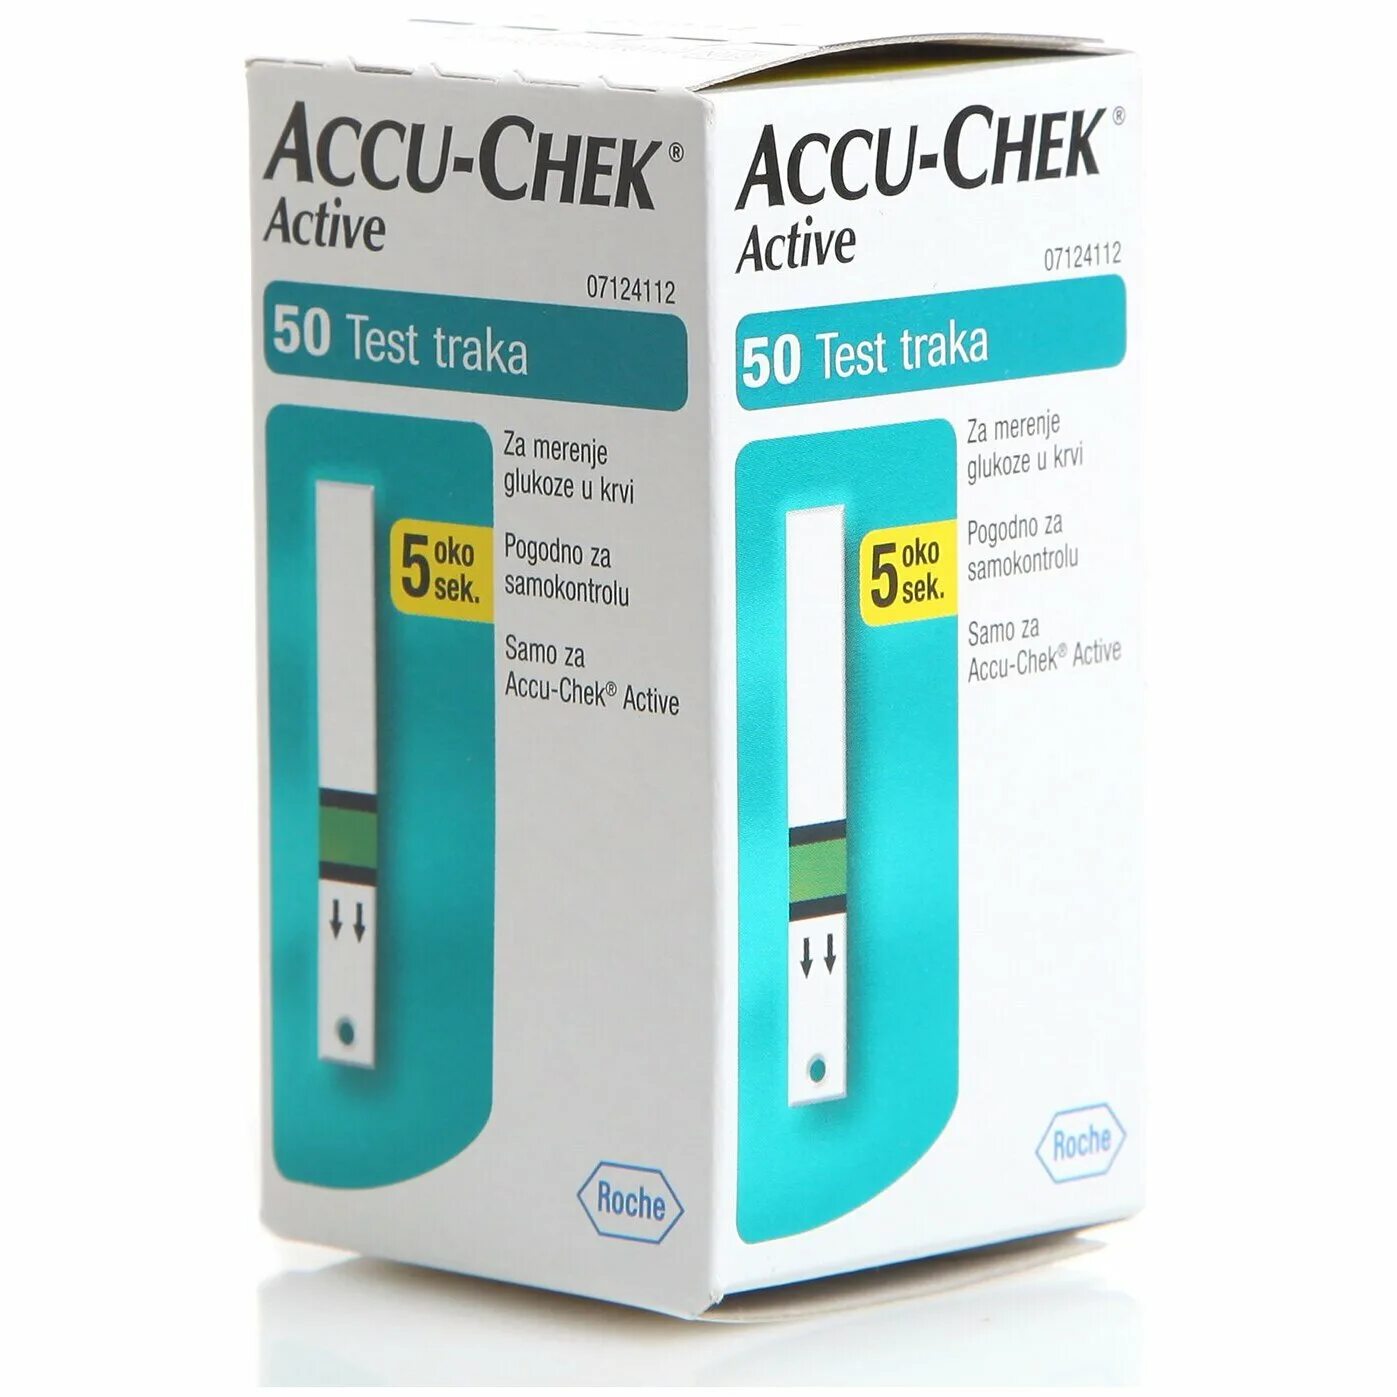 Accu-Chek тест-полоски Active. Тест полоски Accu Chek Active 50. Accu-Chek Active тест-полоски 50шт. Акку-чек (Accu-Chek) тест-полоски Актив 100 шт. Рош диагностикс ГМБХ.